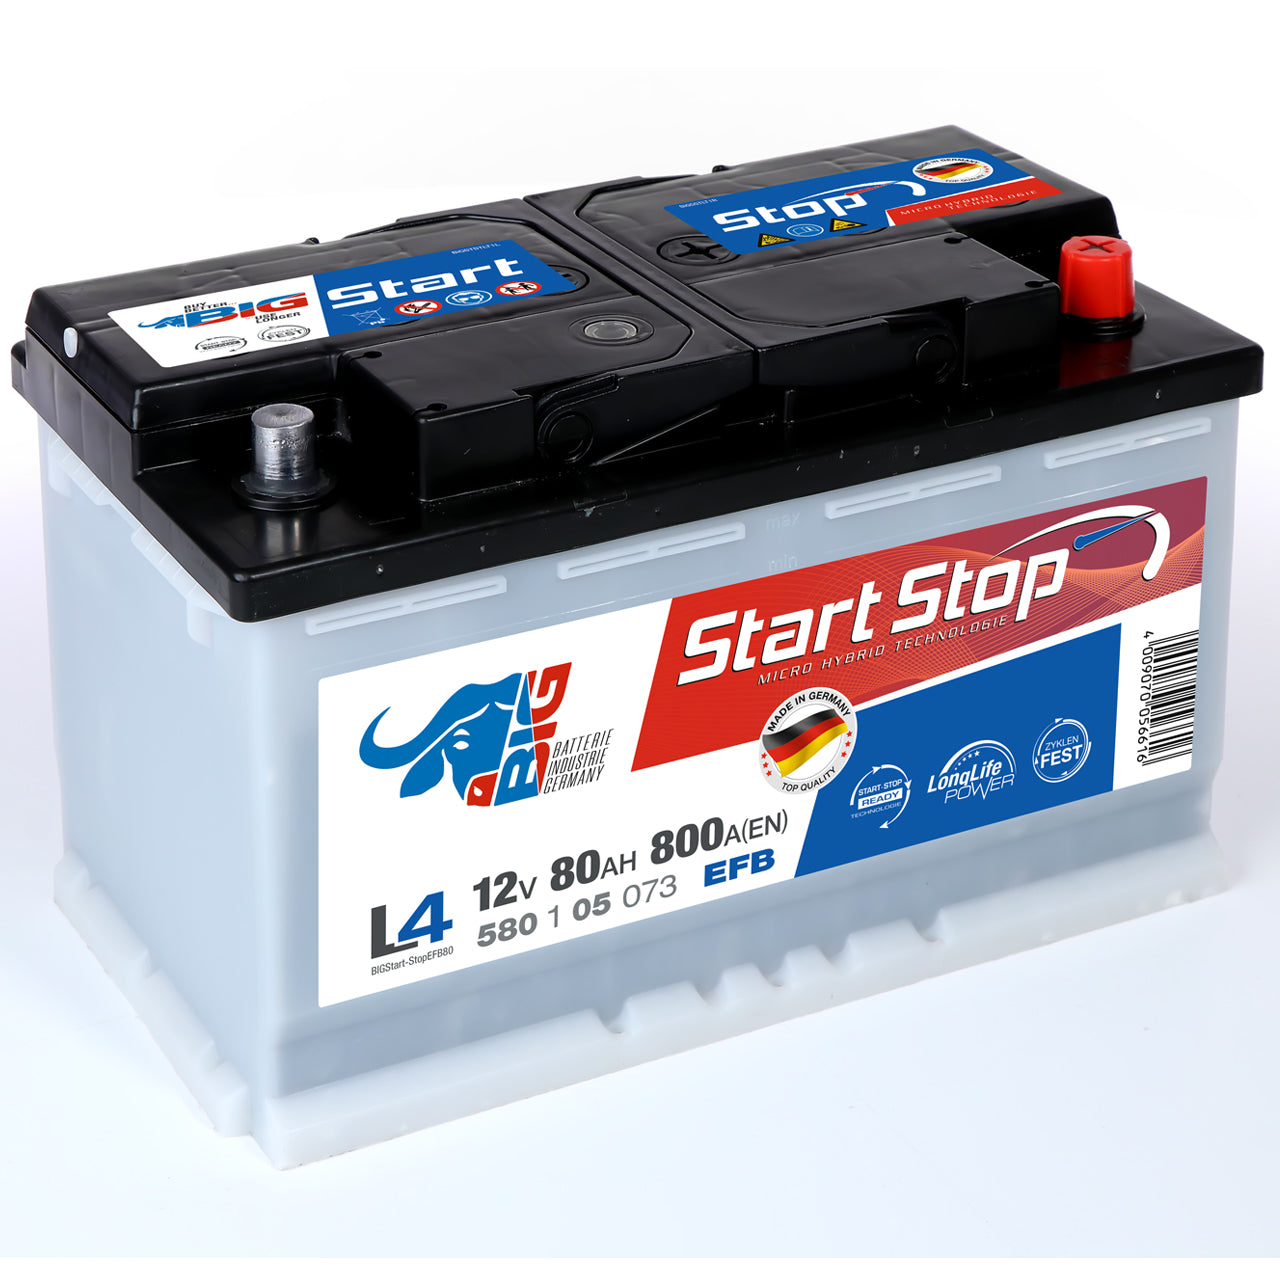 https://www.batterie-industrie-germany.de/cdn/shop/files/Autobatterie-BIGStart-StopEFB80-12V-80Ah-Seite-links_1280x.jpg?v=1700650713